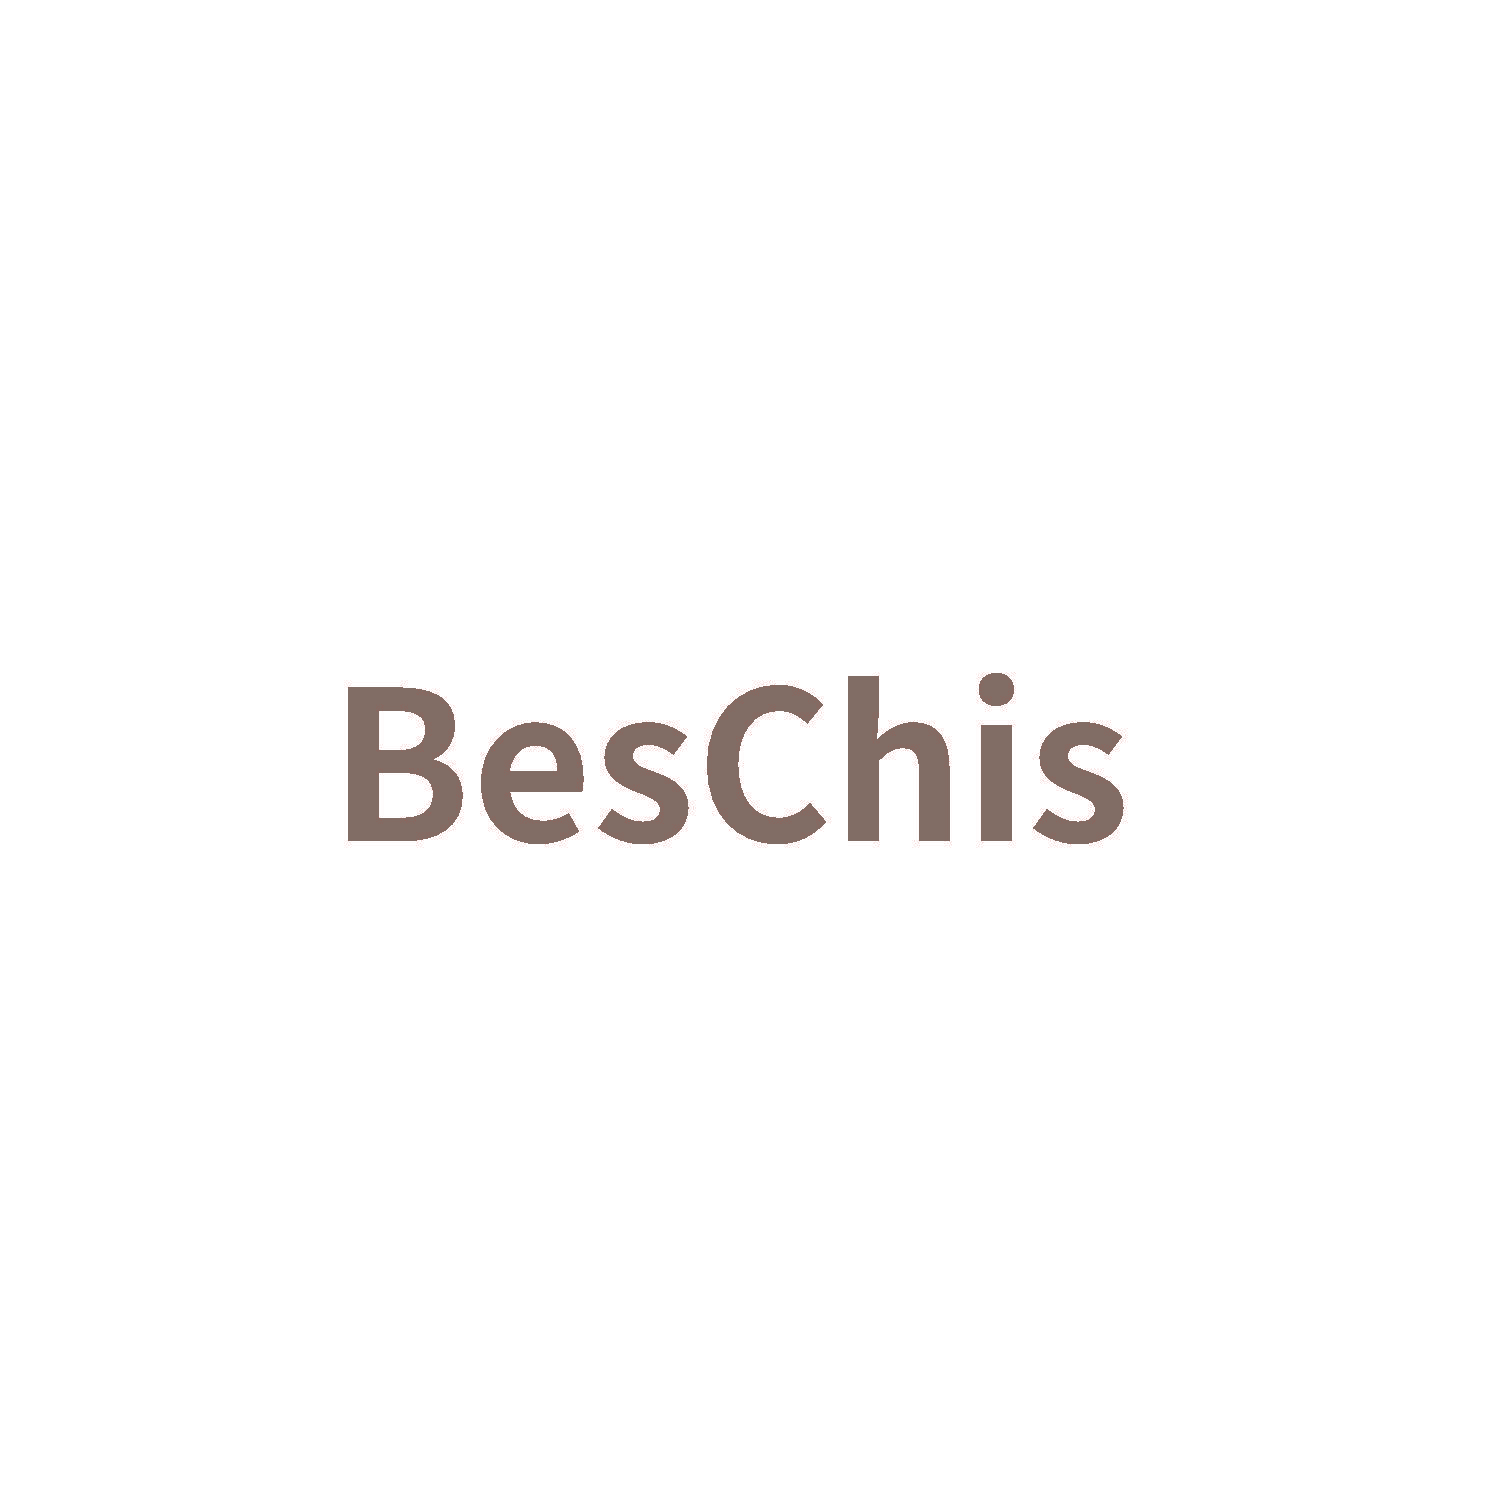 BesChis